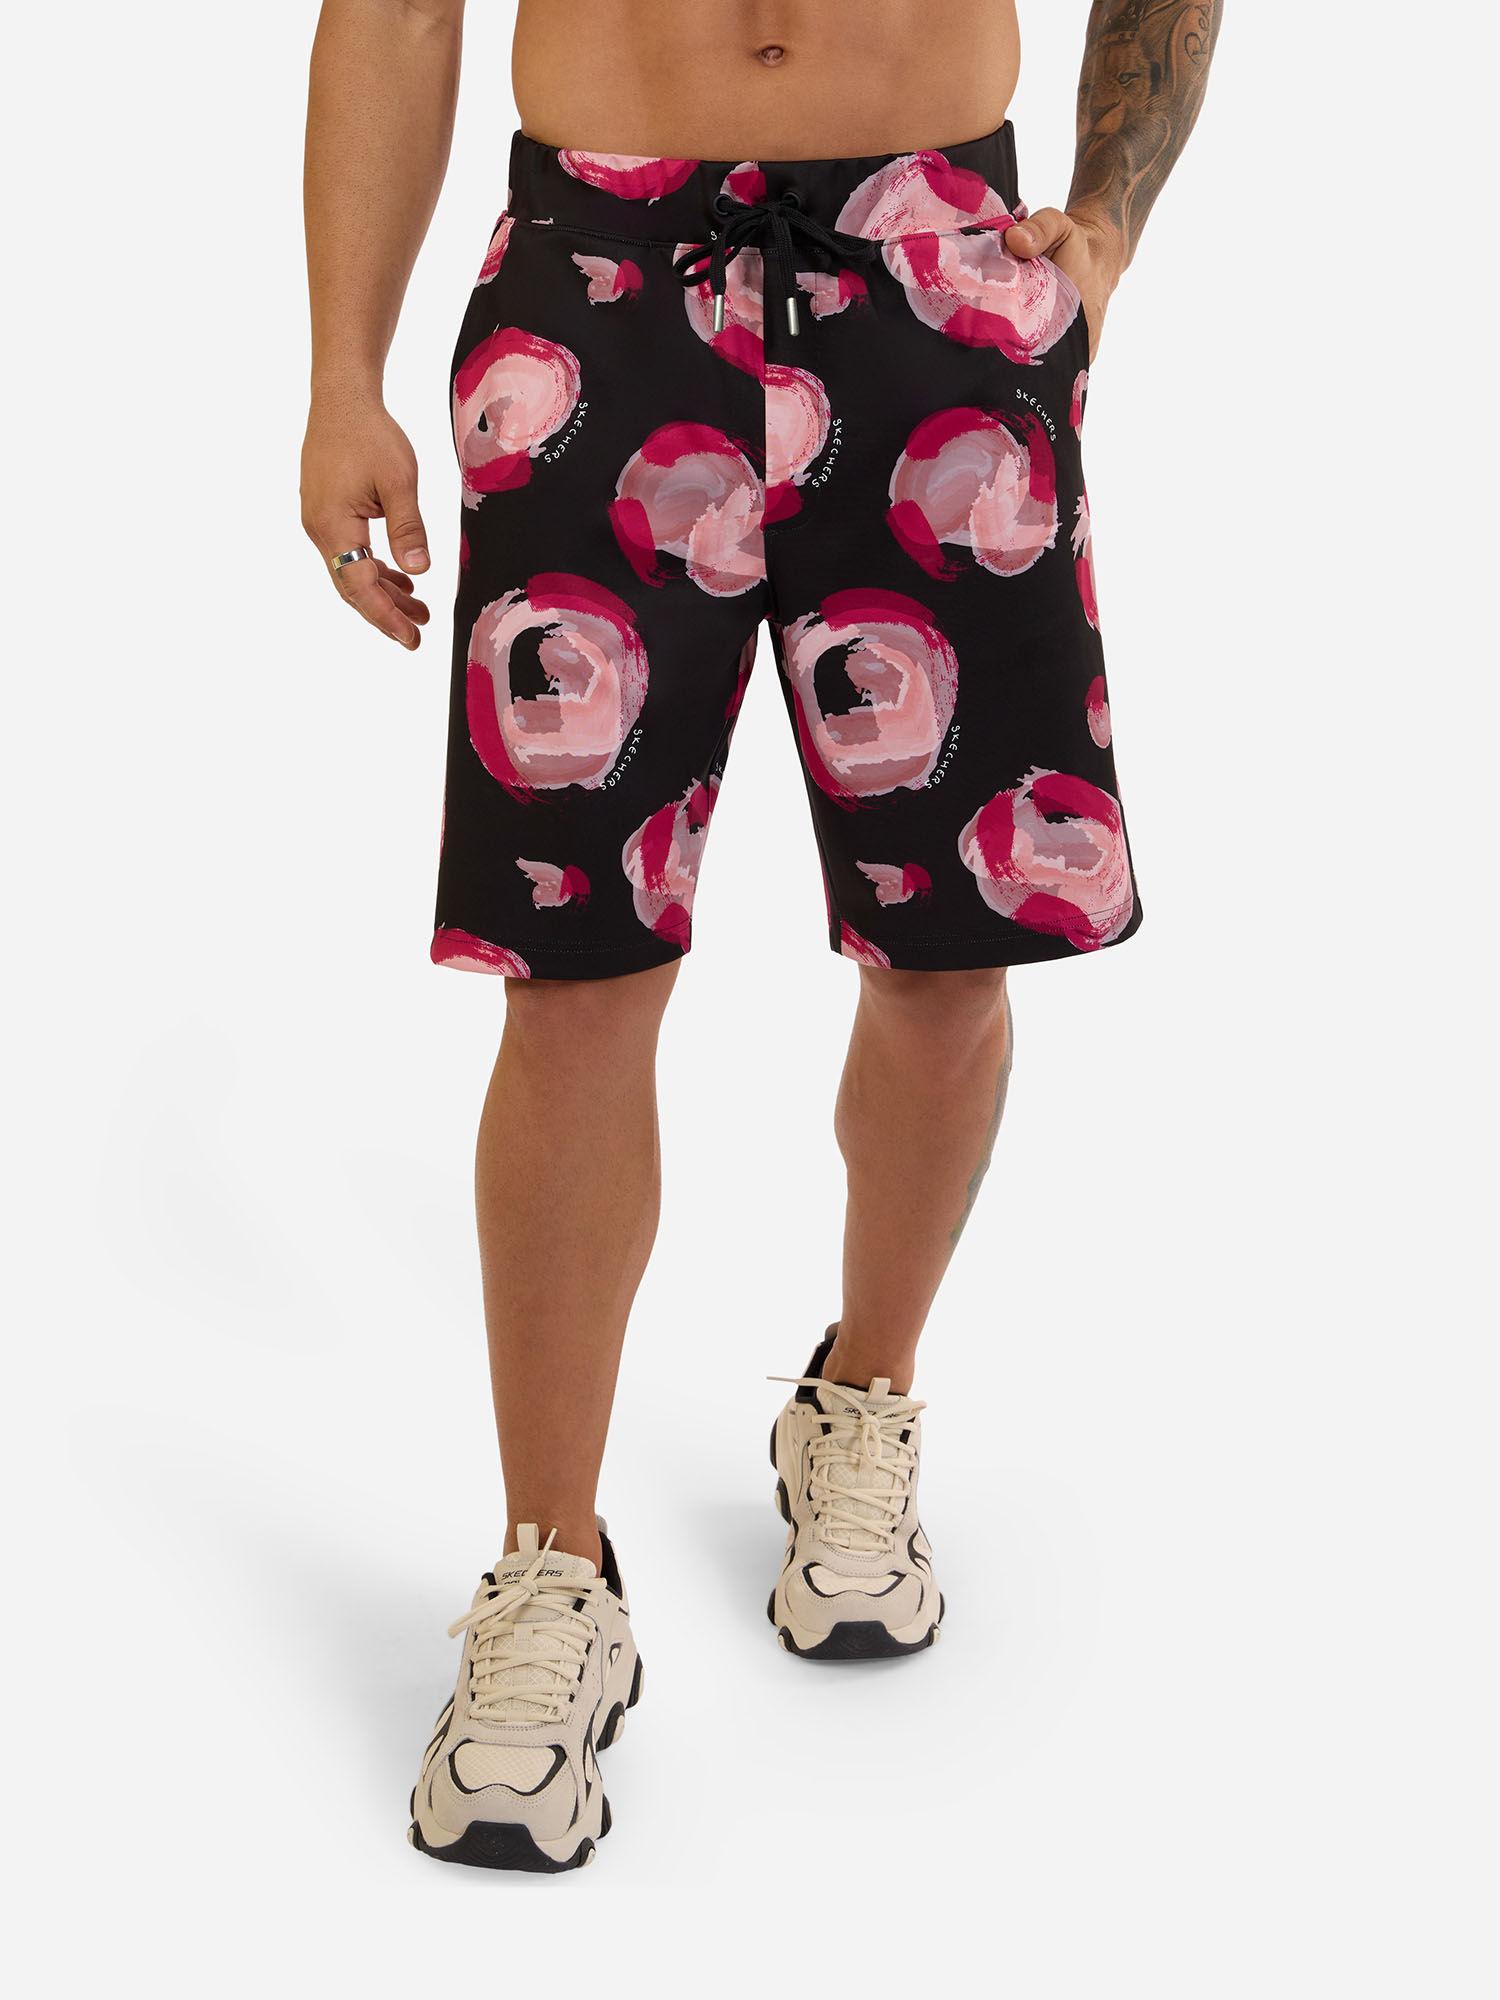 mens-printed-shorts